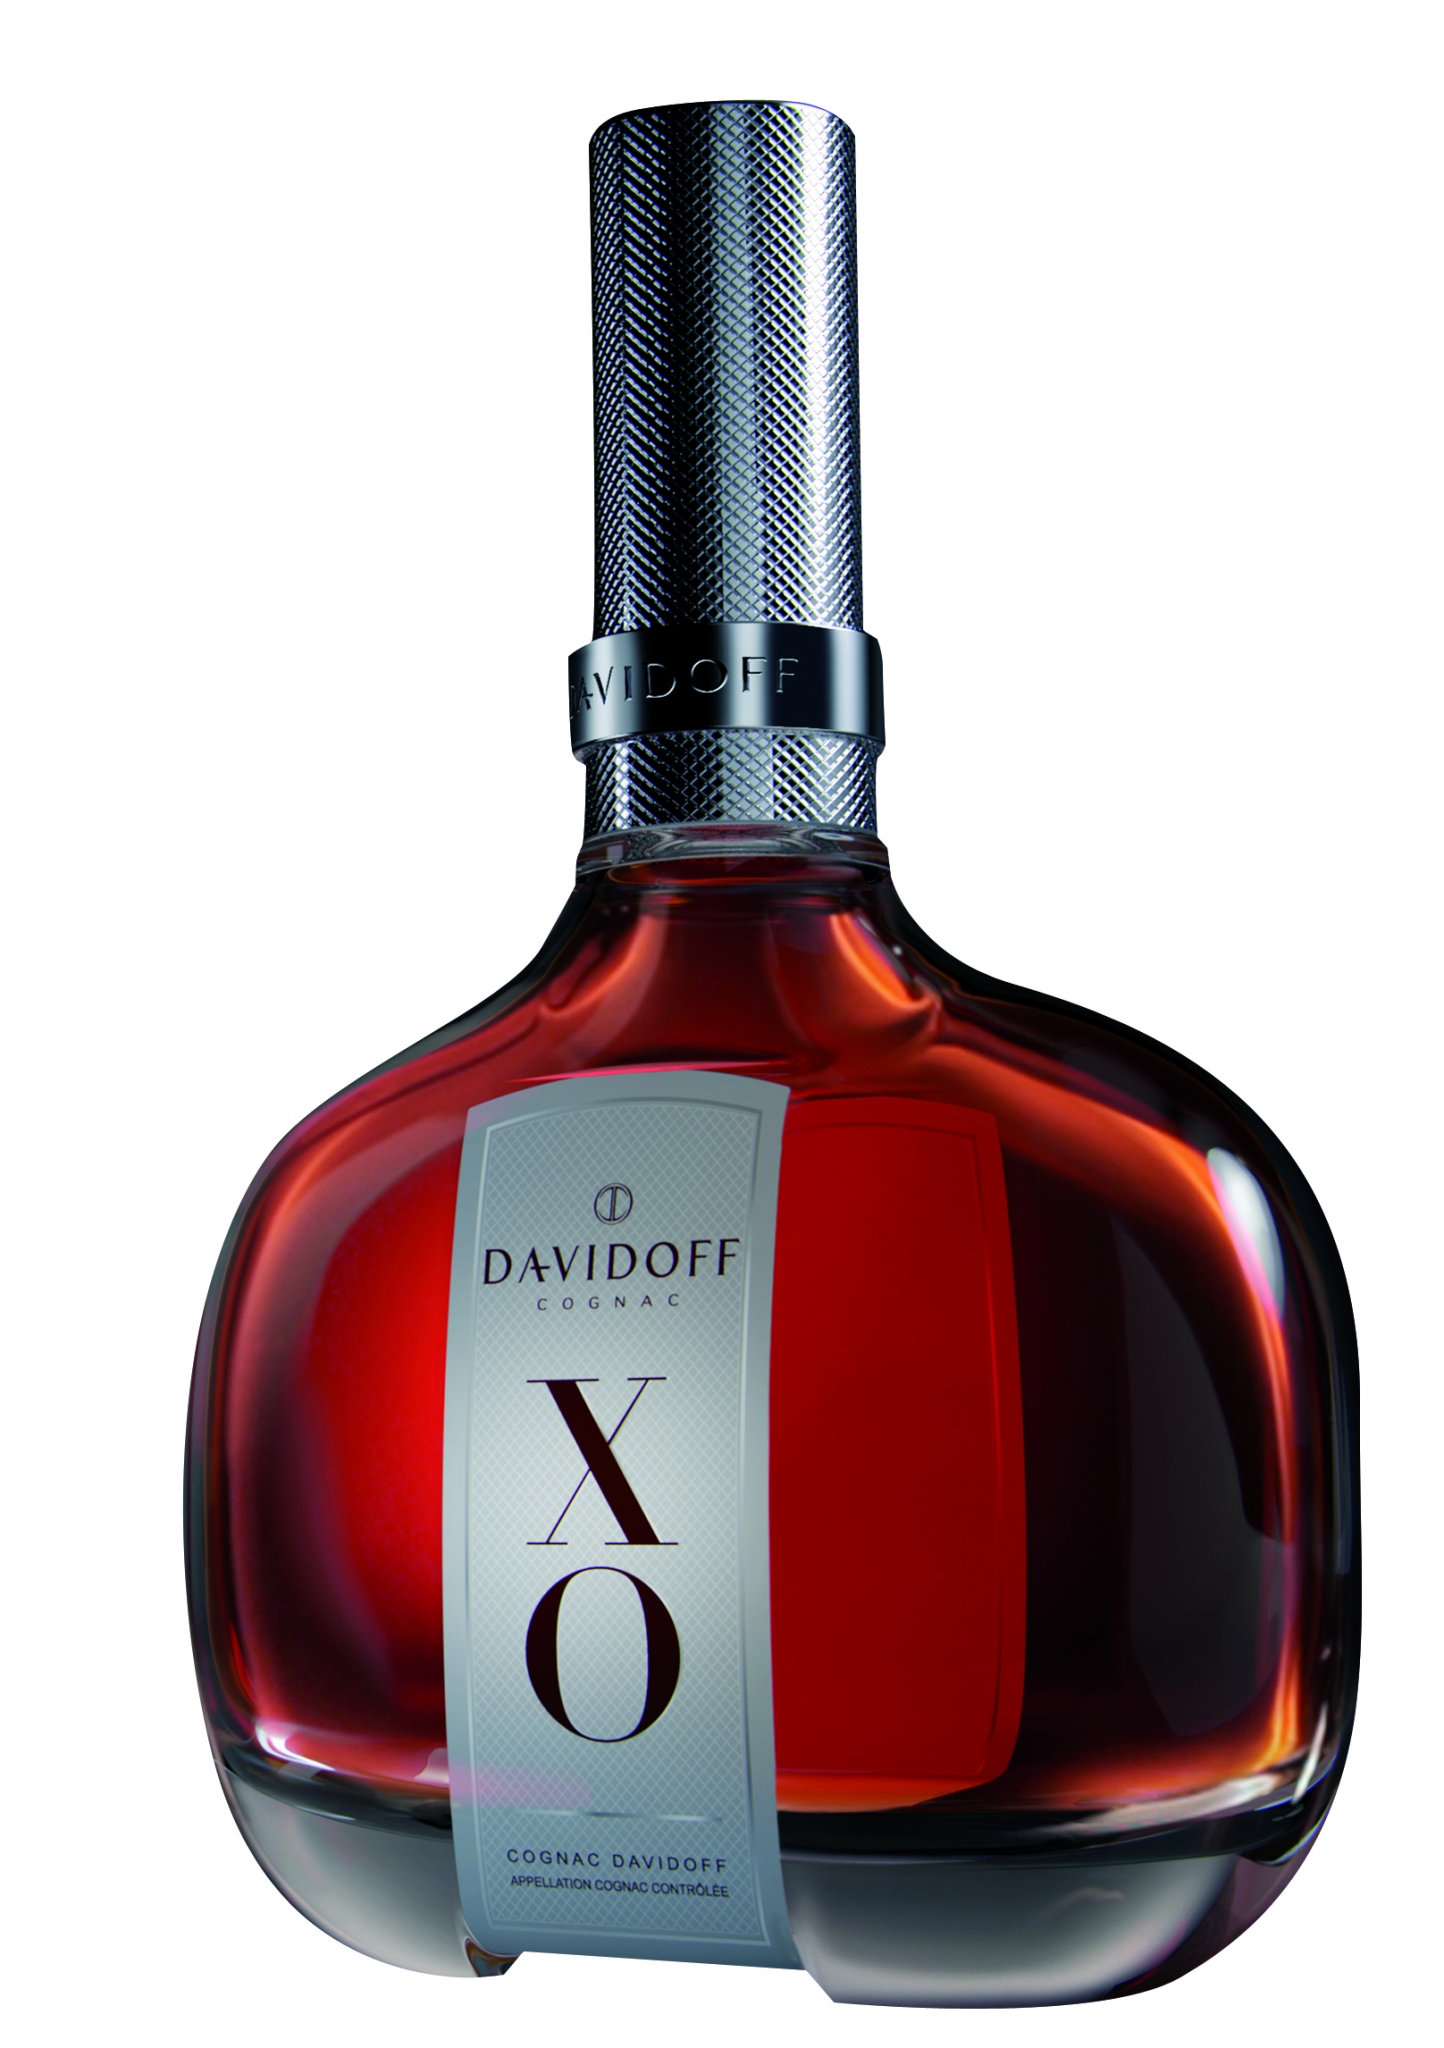 Cognac xo цена. Коньяк Давидофф Хо 0.7. Davidoff XO 0.7L. Коньяк Davidoff XO. Французский коньяк Иксо.